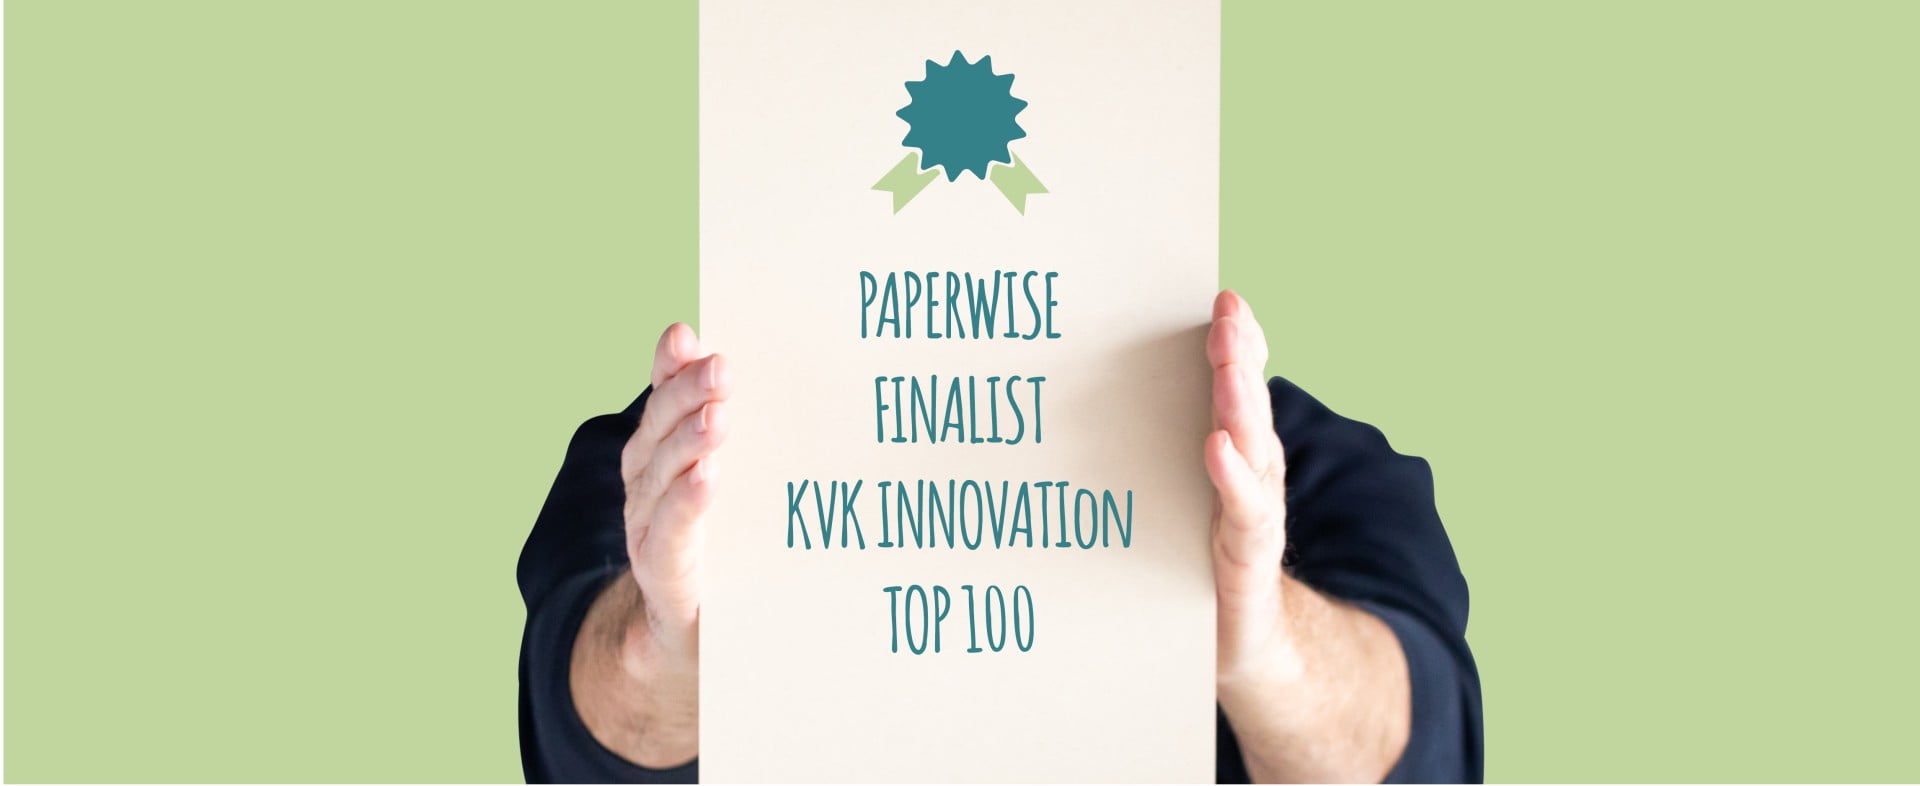 PaperWise finalist i nederlandsk innovasjonskonkurranse.